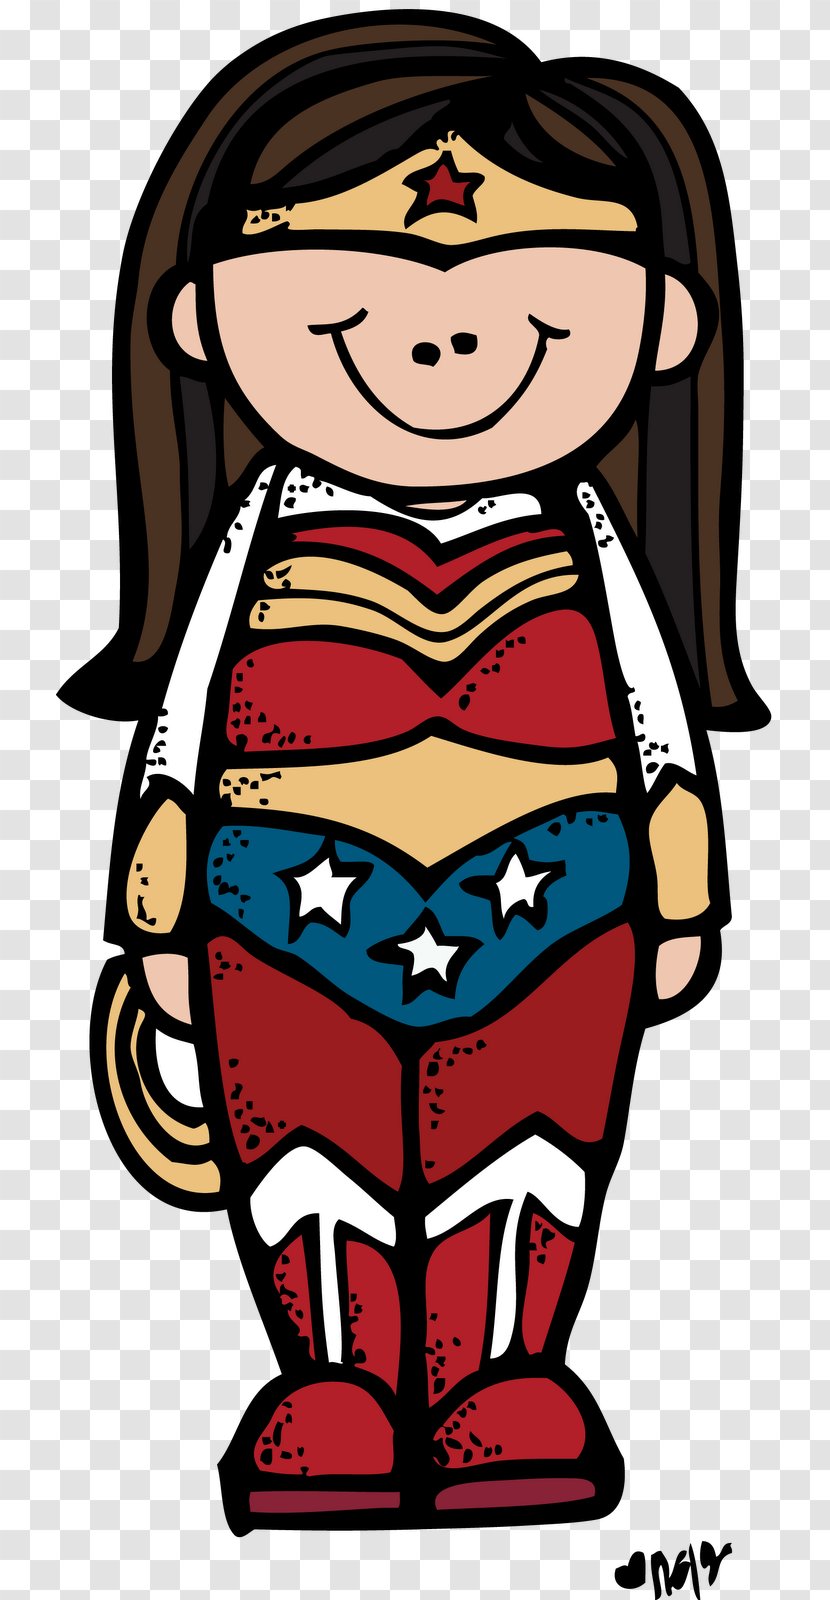 Diana Prince YouTube Superhero Clip Art - Human Behavior - Wonder Woman Transparent PNG